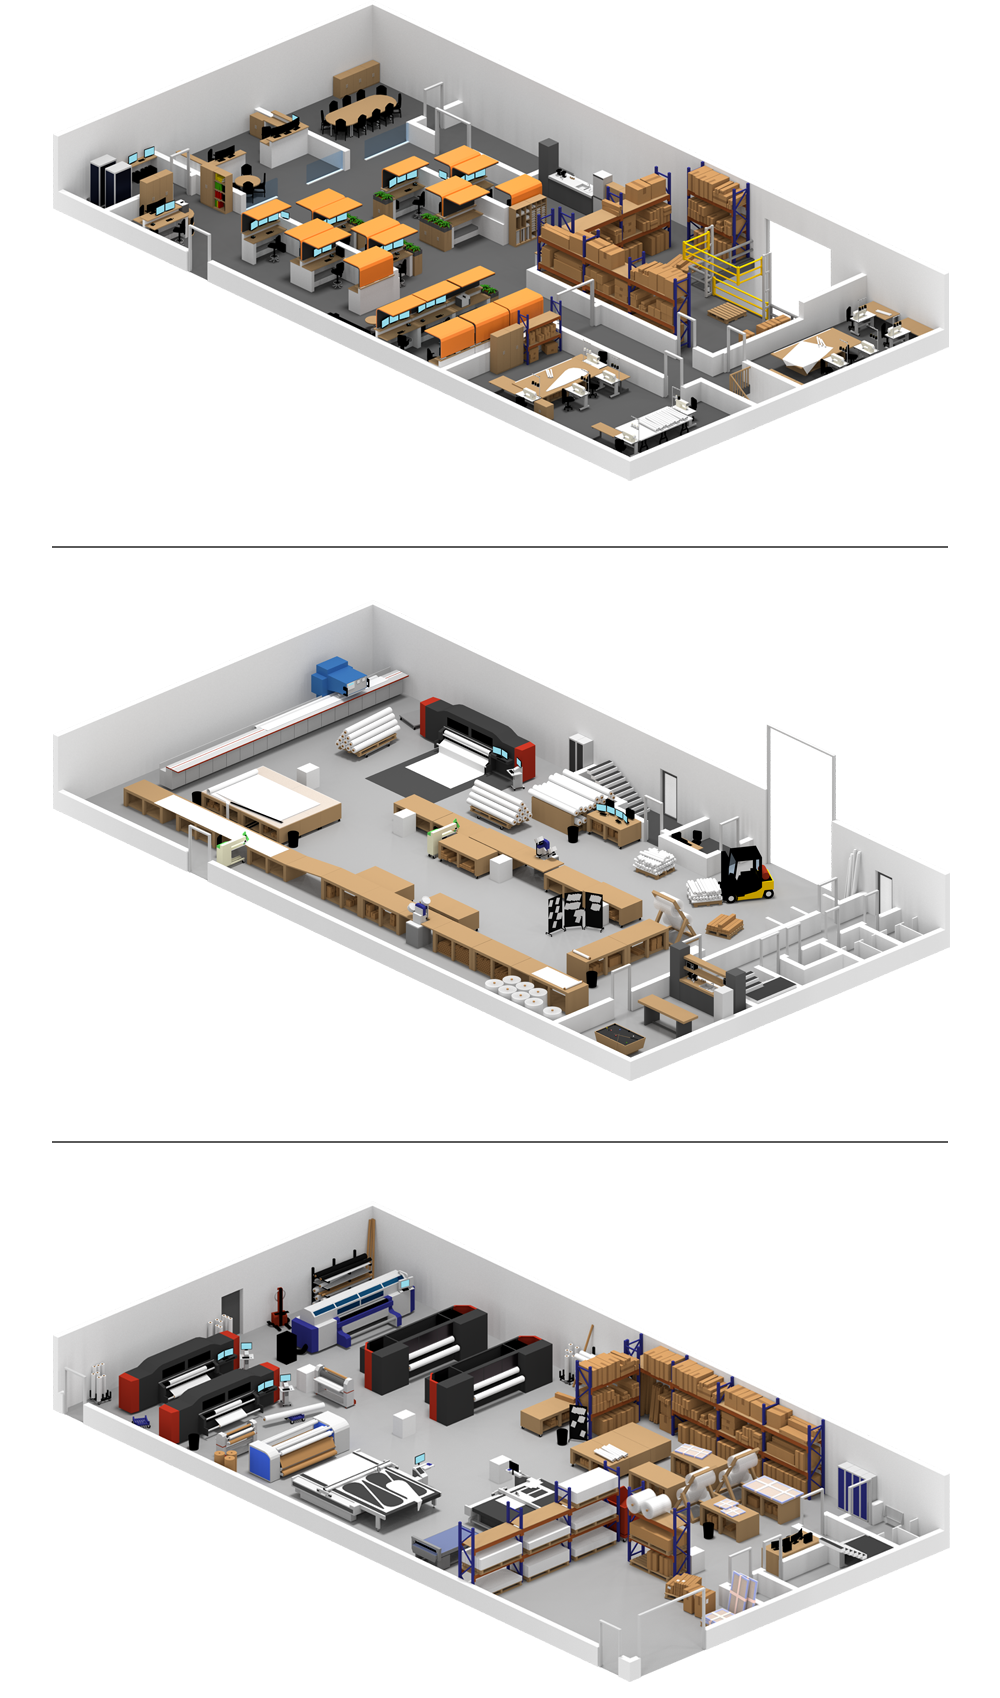 Floorplan of Venture Banners. First floor, ground floor and basement.